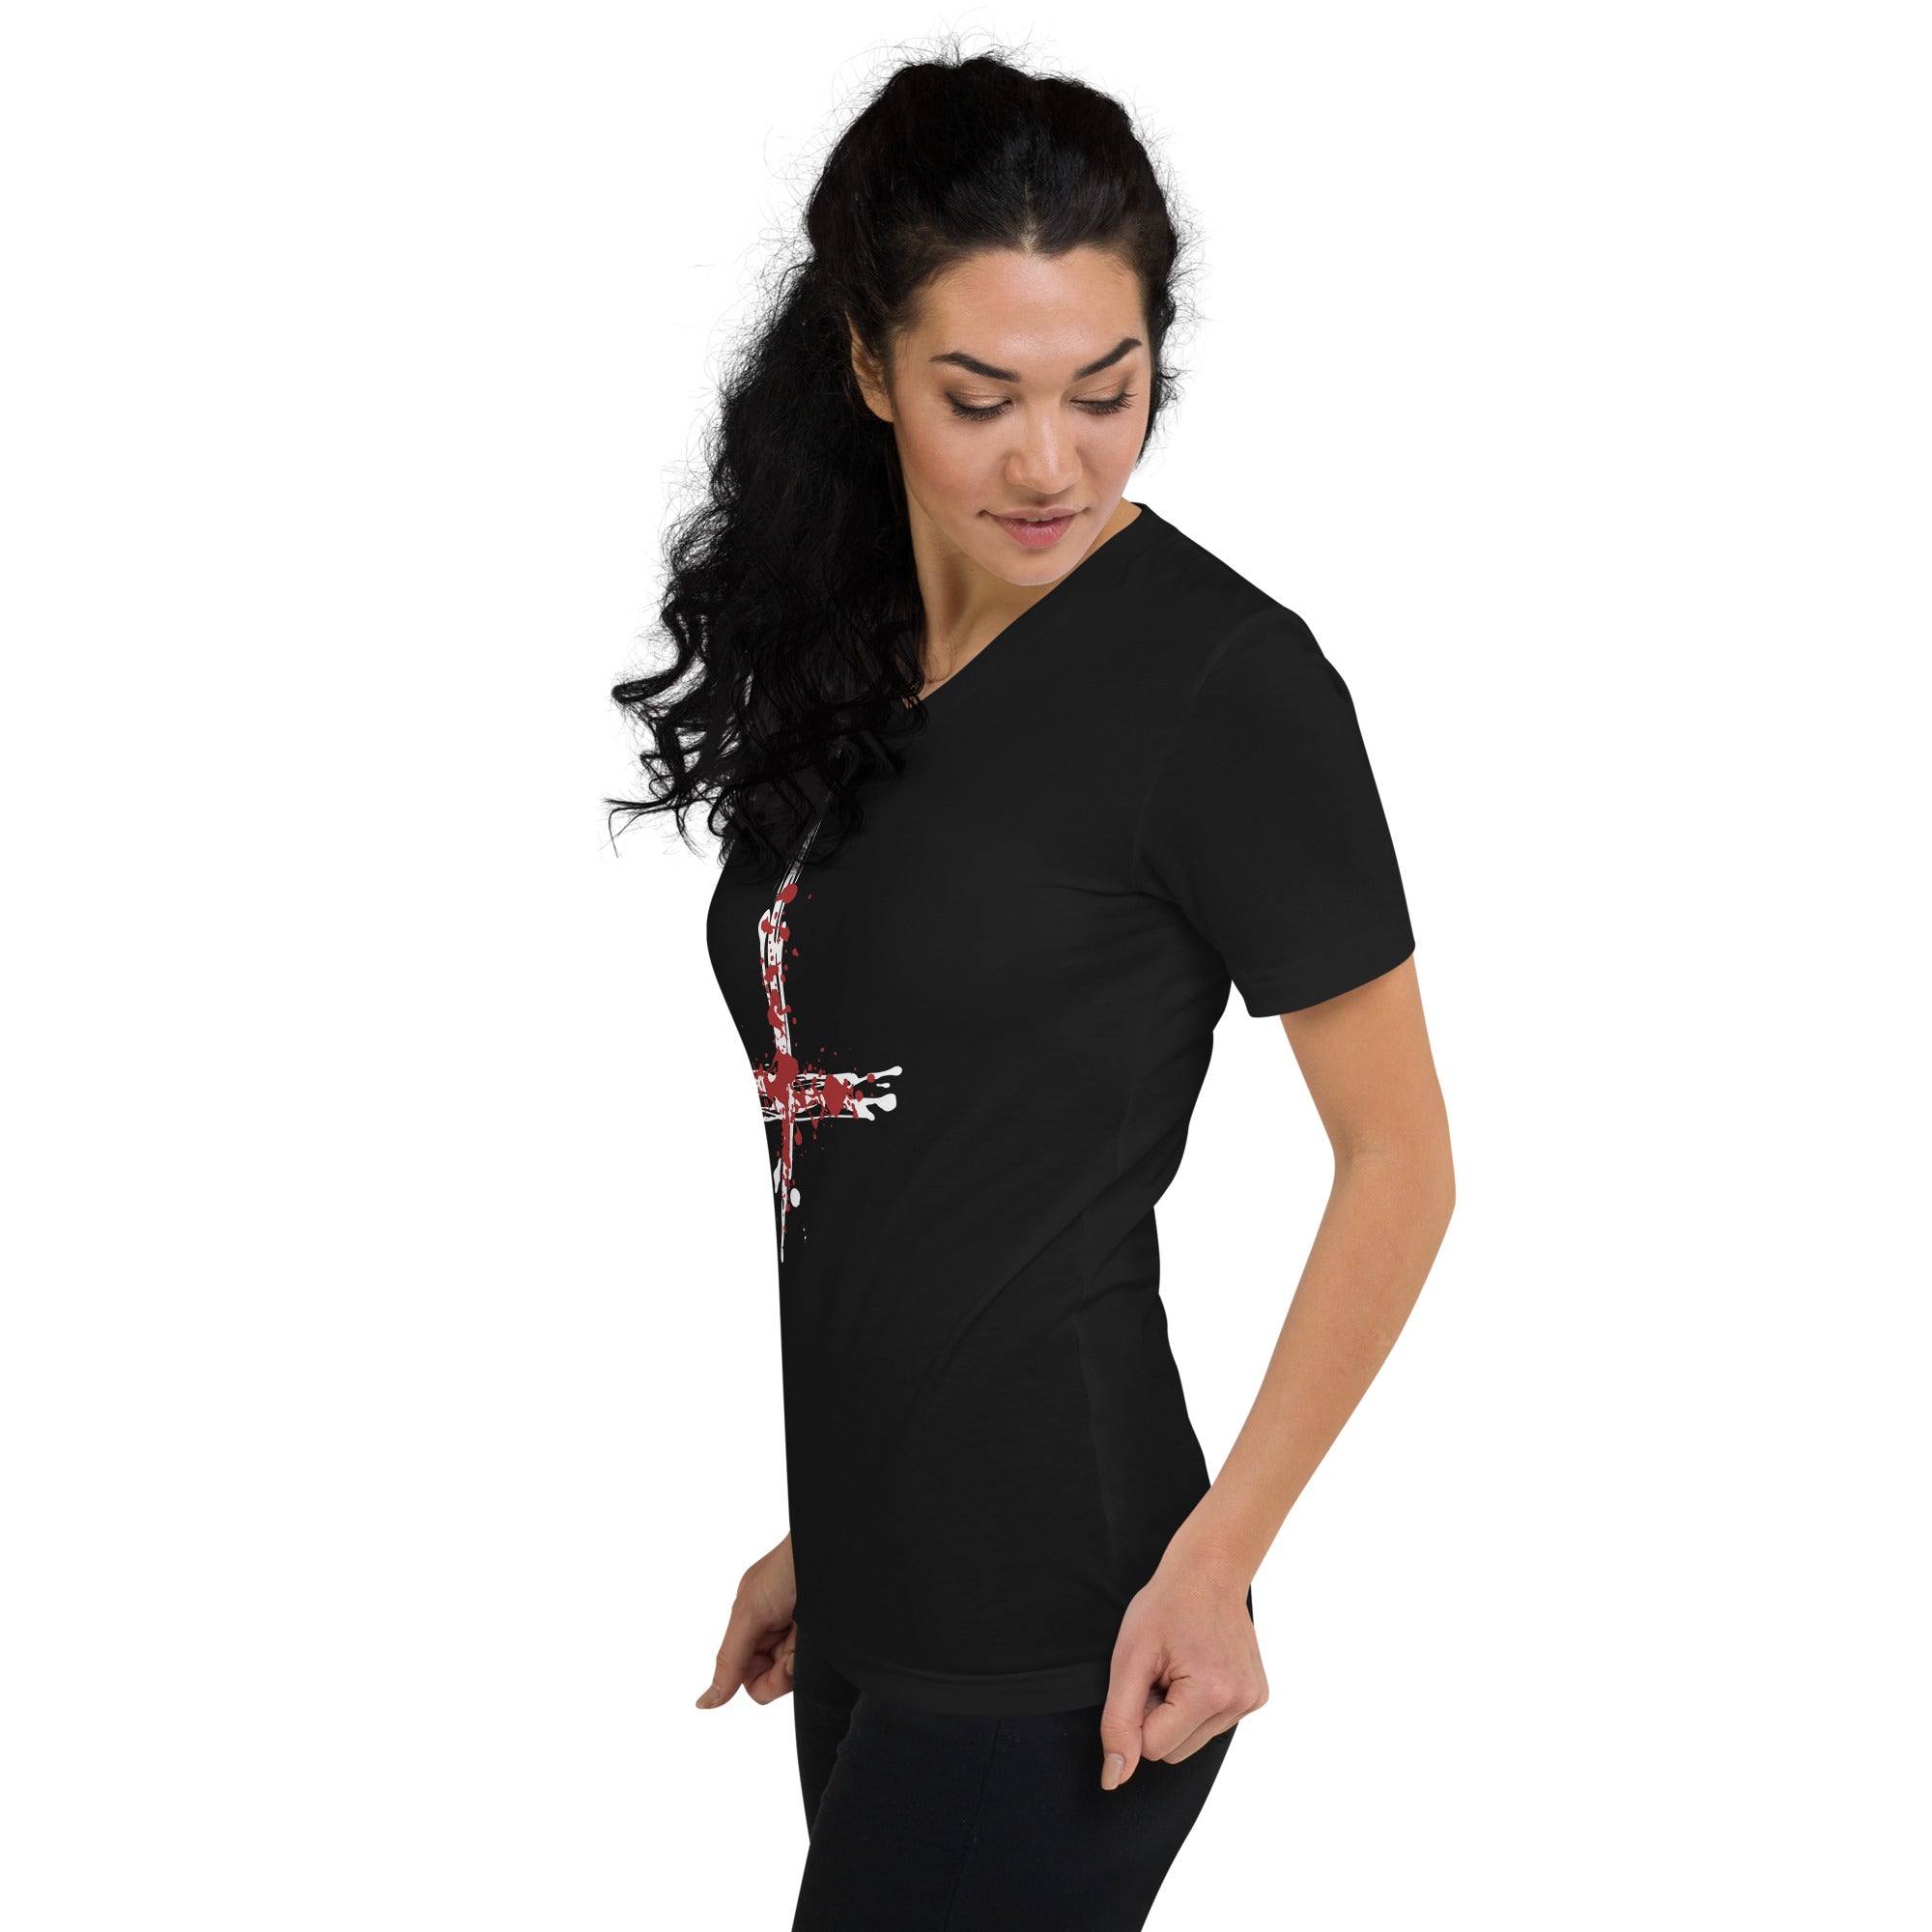 Inverted Cross Blood of Christ Women's Short Sleeve V-Neck T-Shirt - Edge of Life Designs